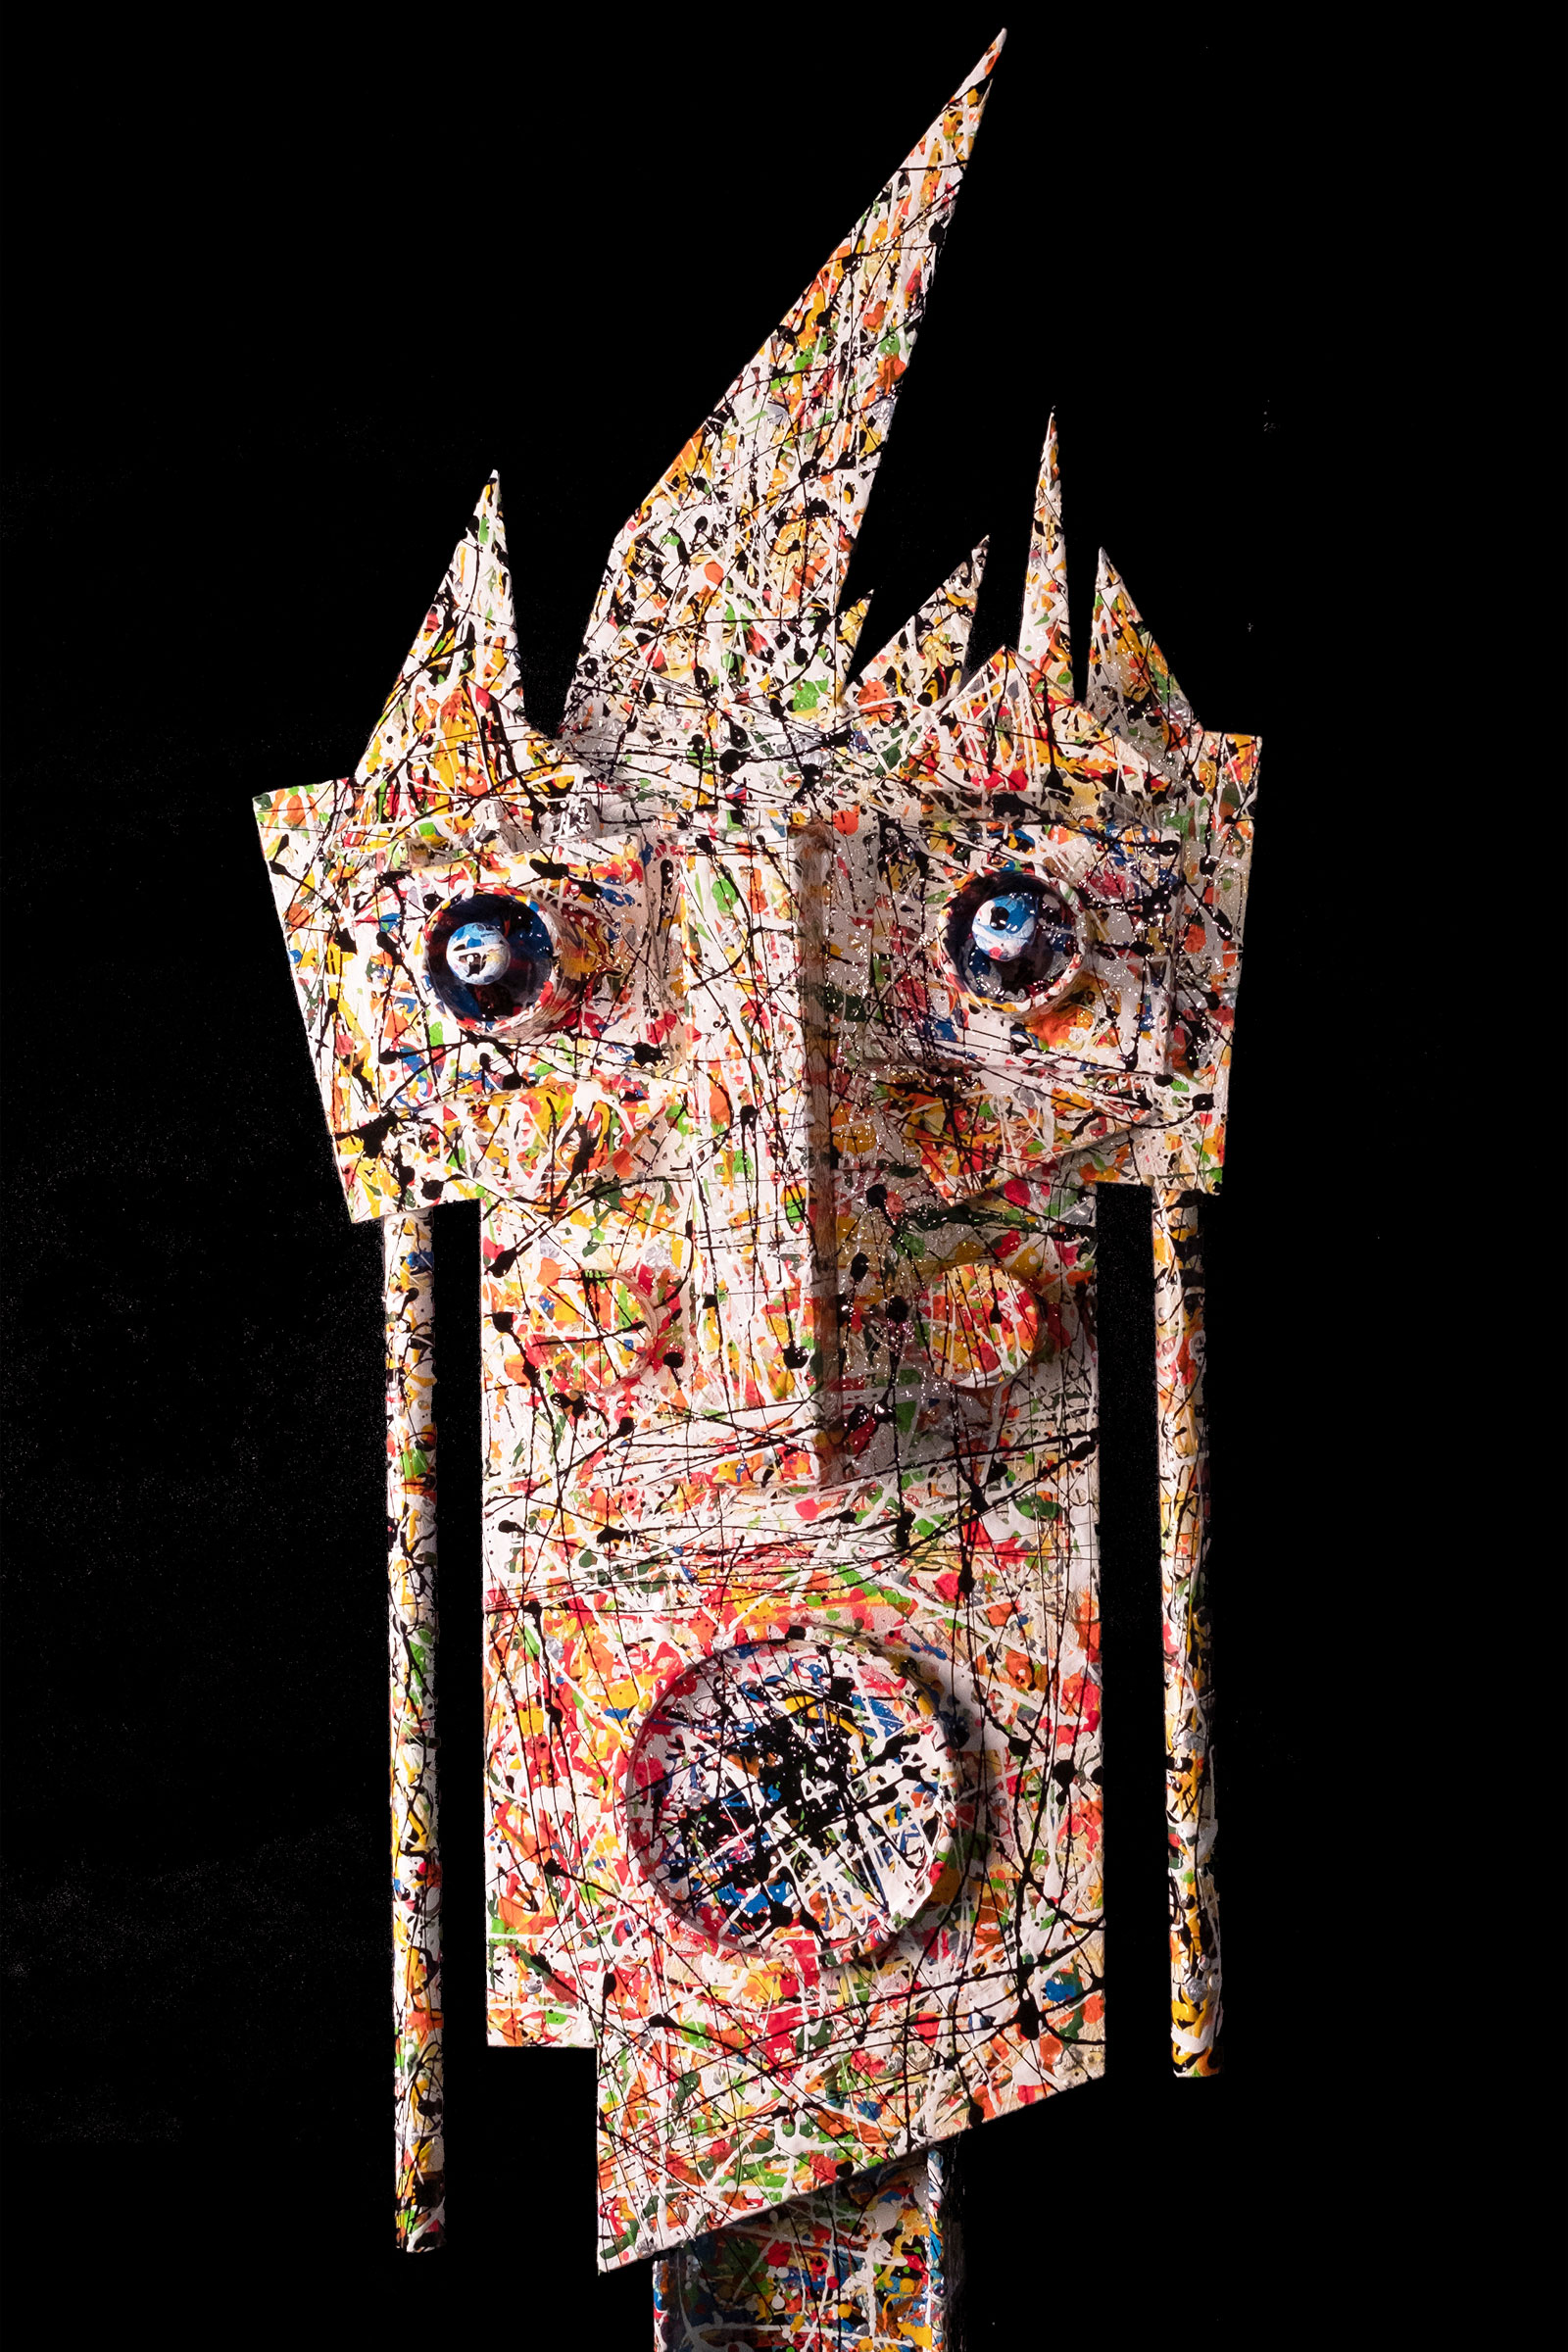 Maschera, 2018, particolare, ferro di scarto saldato, smalto e dripping,140 x 40 cm